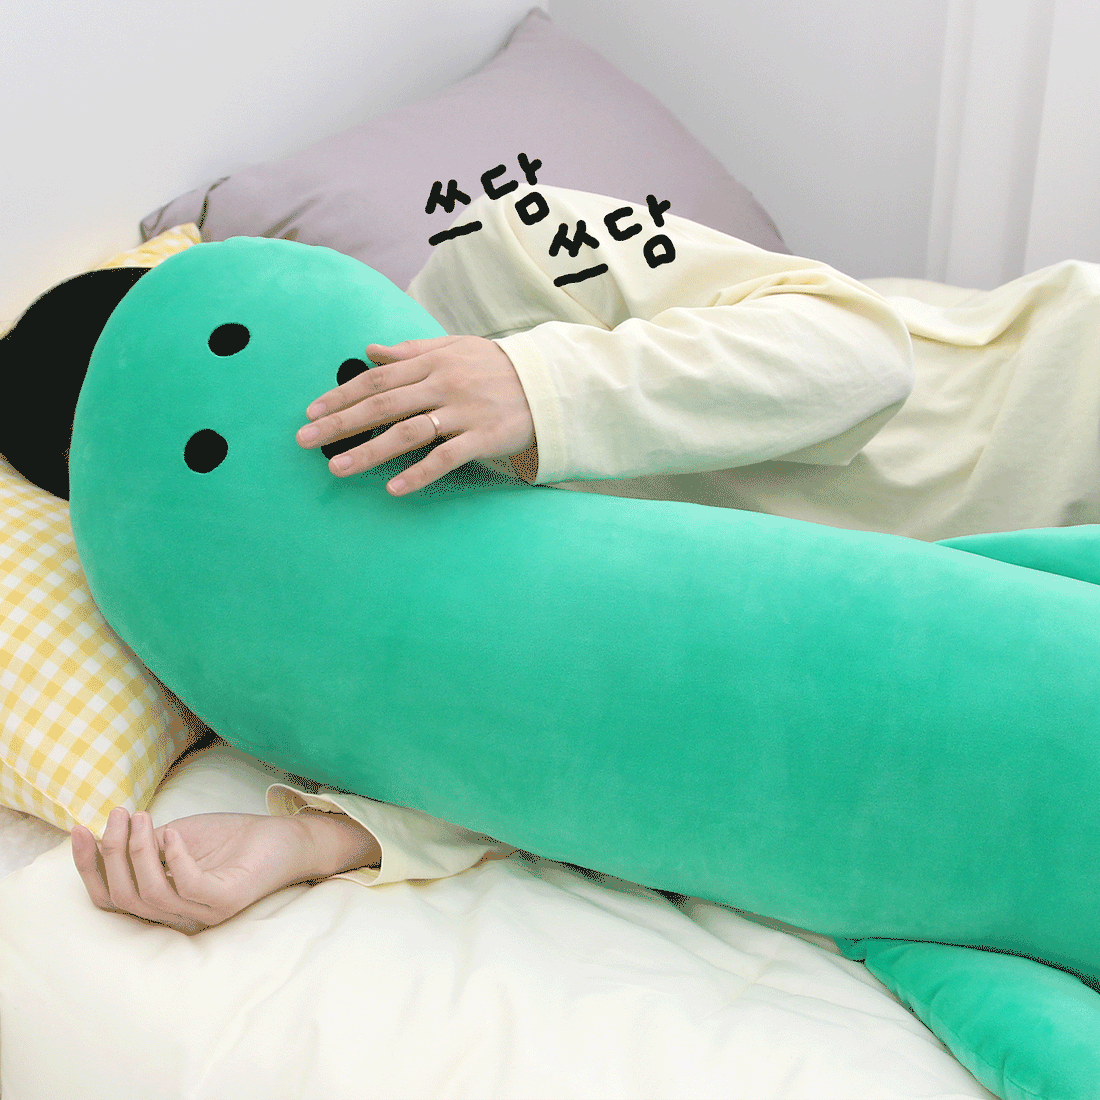 【韓國連線】 Joguman Studio x Nara Home Deco Big Body Pillow Brachio 腕龍大抱枕